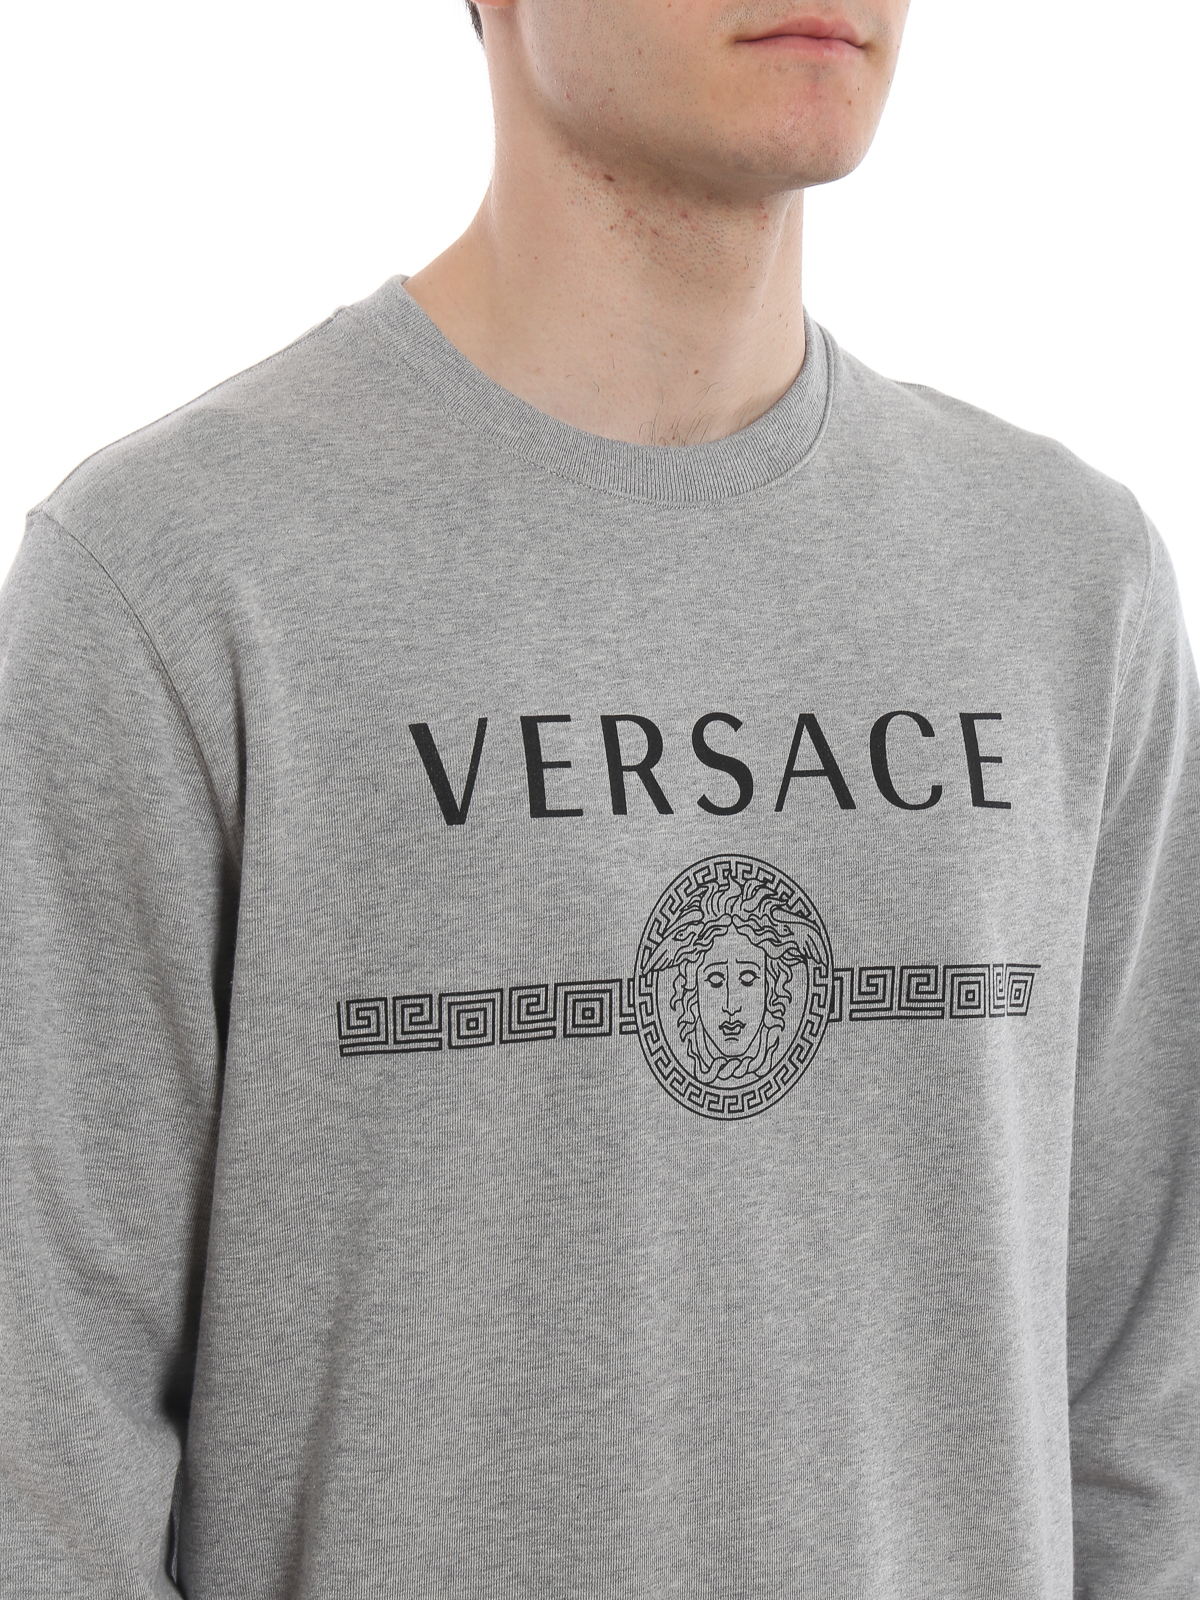 grey versace sweatshirt